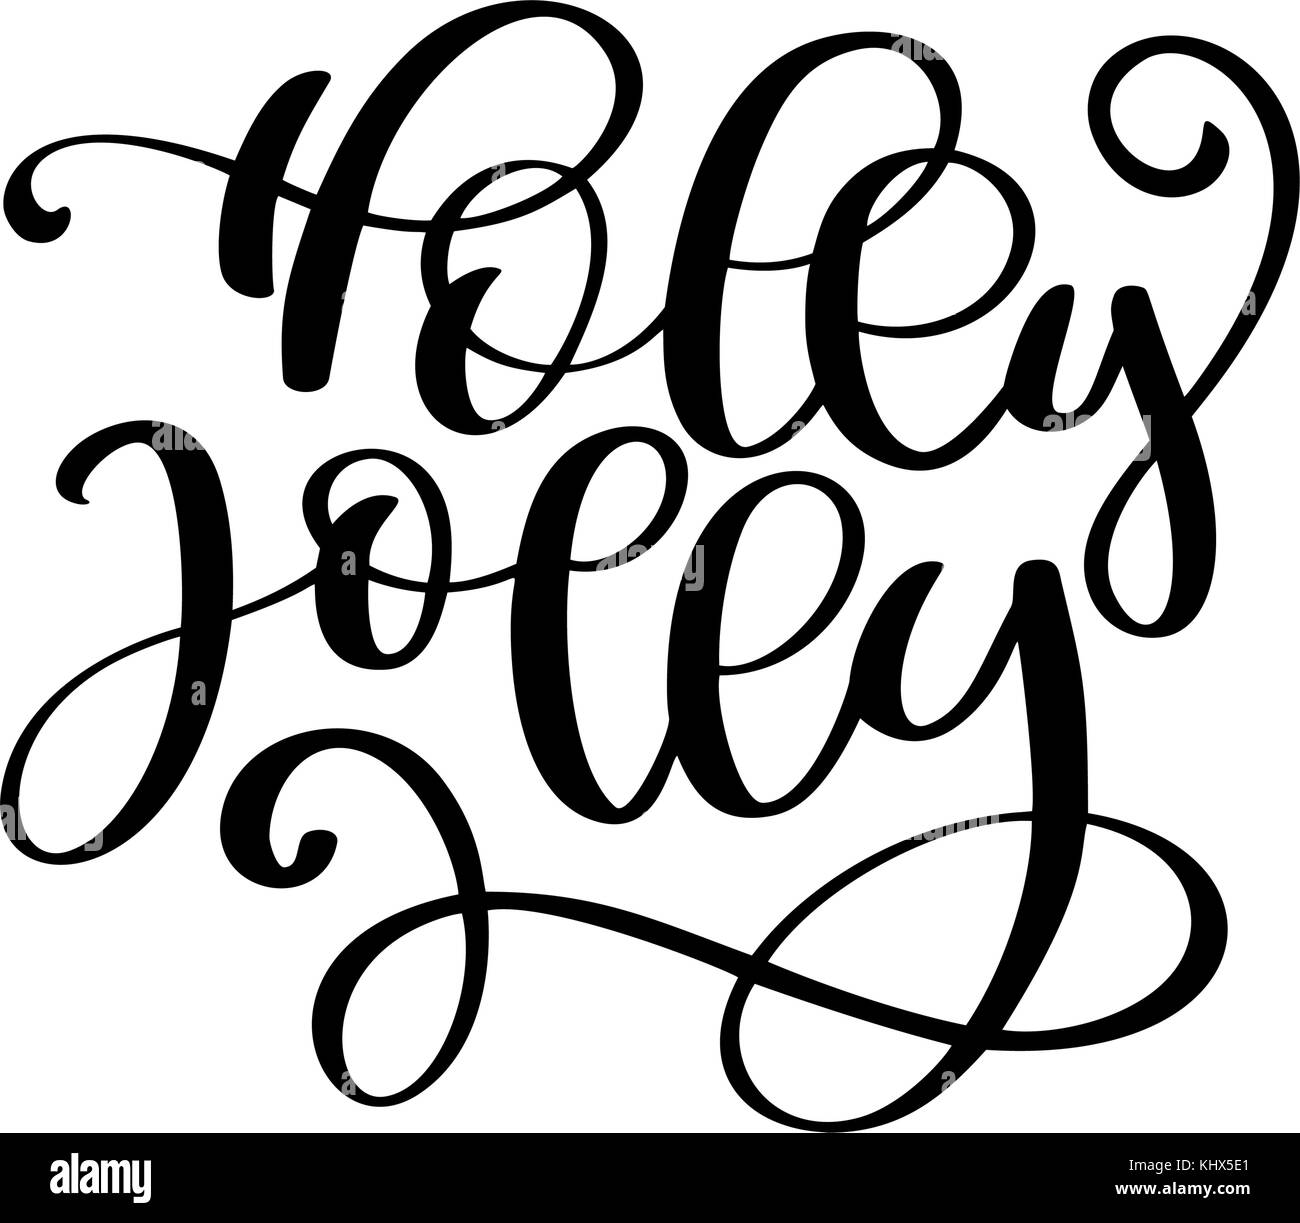 Holly Jolly calligraphy lettering natale frase. disegnati a mano lettere. testo vettoriale per realizzare biglietti di auguri le sovrapposizioni di foto Illustrazione Vettoriale